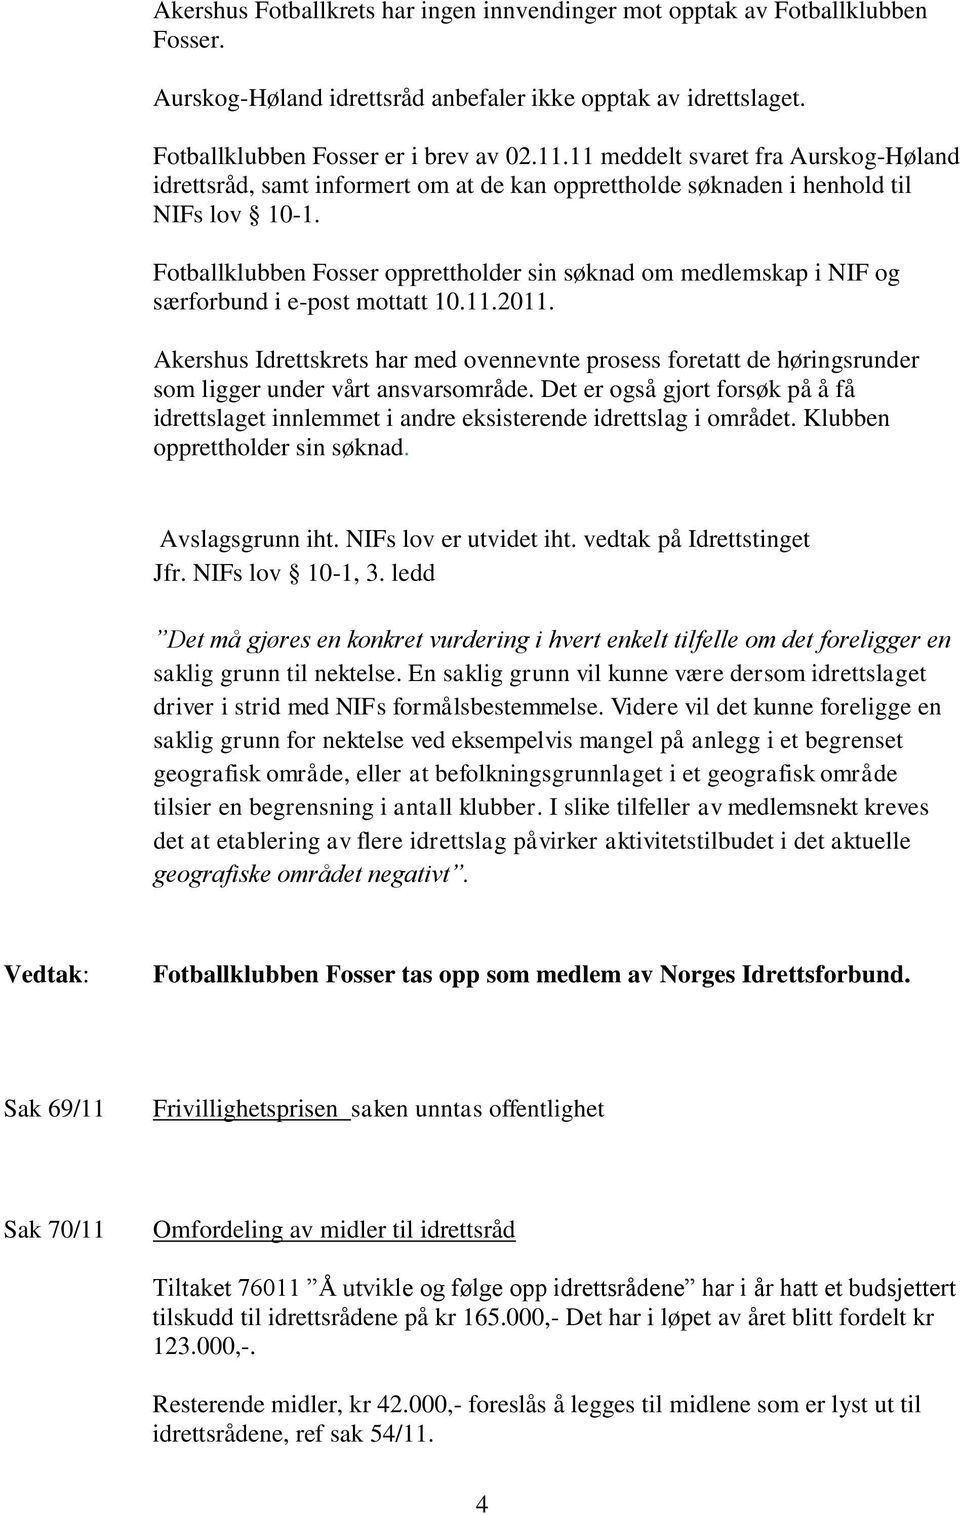 Fotballklubben Fosser opprettholder sin søknad om medlemskap i NIF og særforbund i e-post mottatt 10.11.2011.